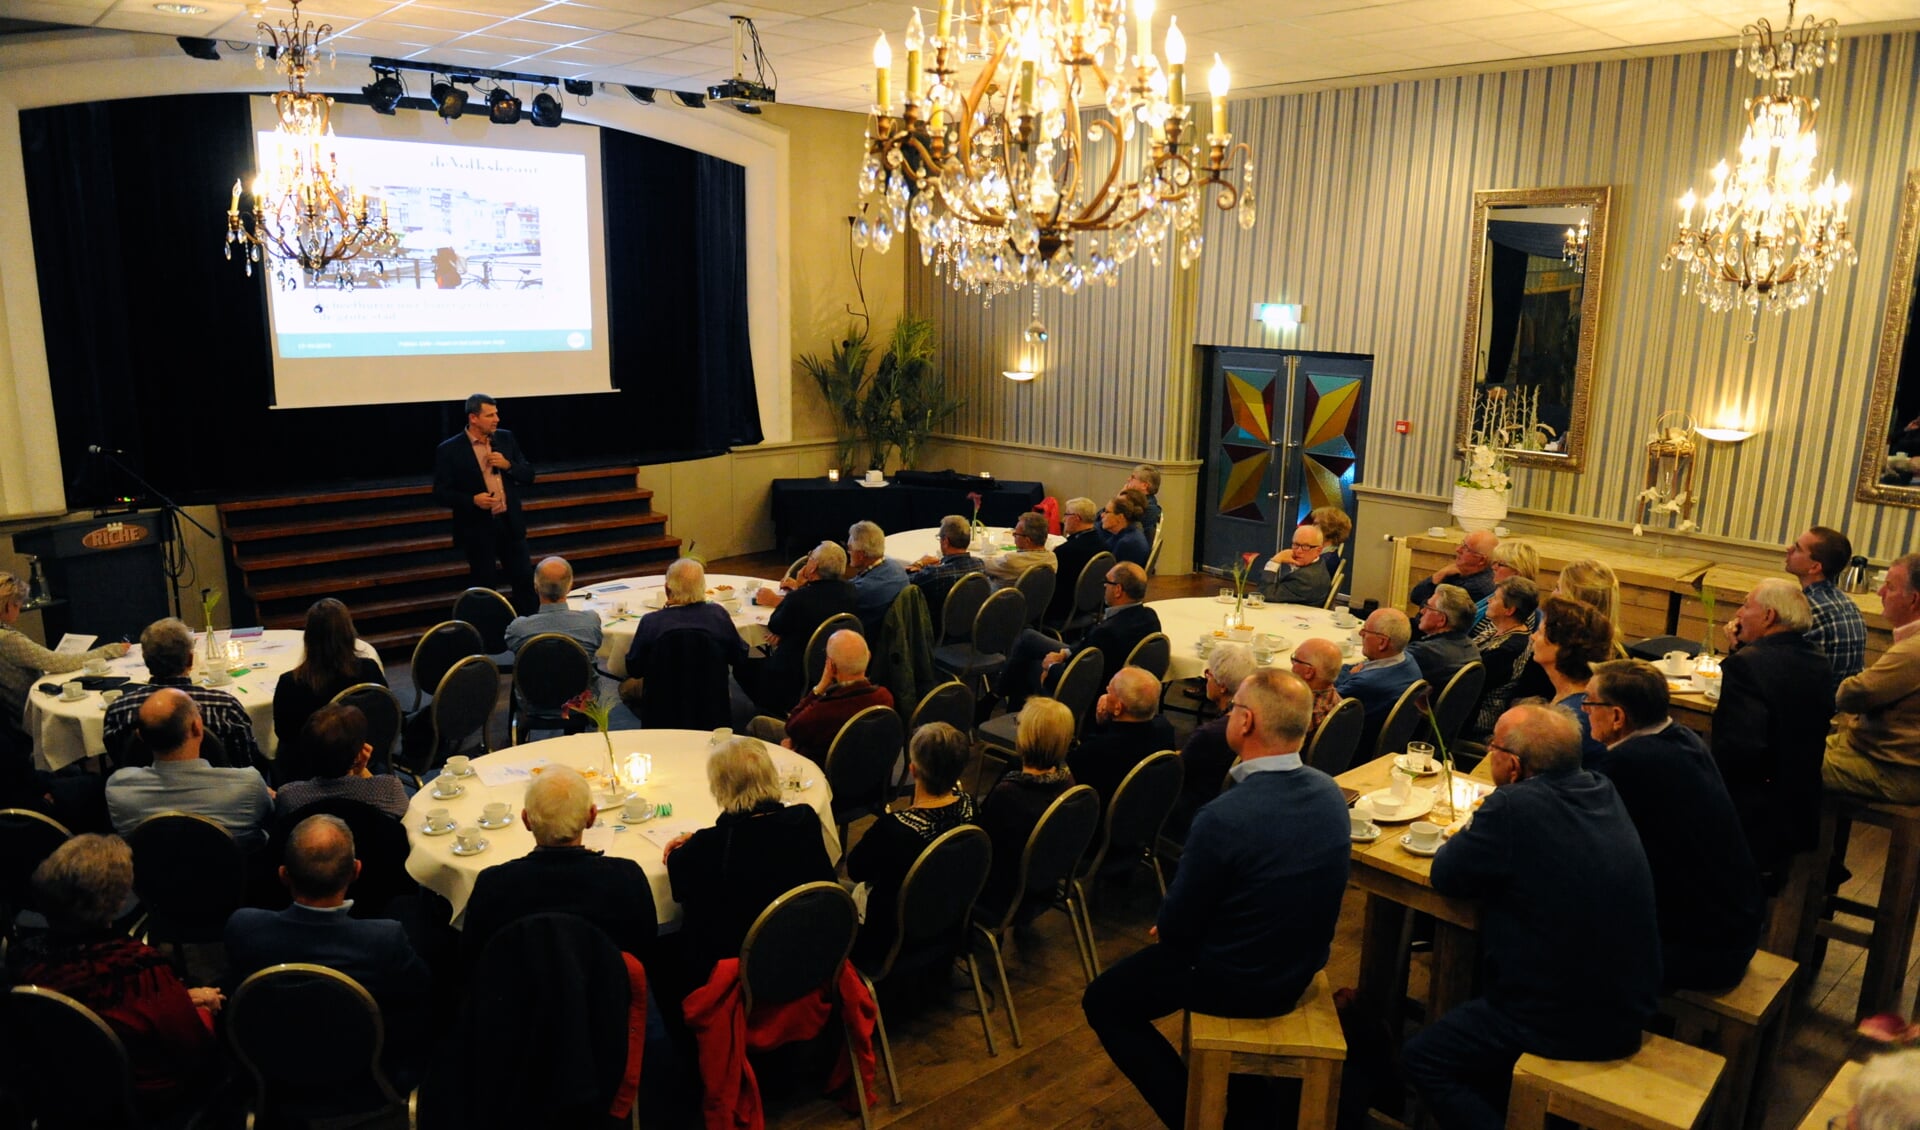 Gericht huurwoningen bouwen voor jongeren, was één van de onderwerpen tijdens het afgelopen week gehouden Politiek Café in Boxmeer. (foto: Ingrid Driessen)